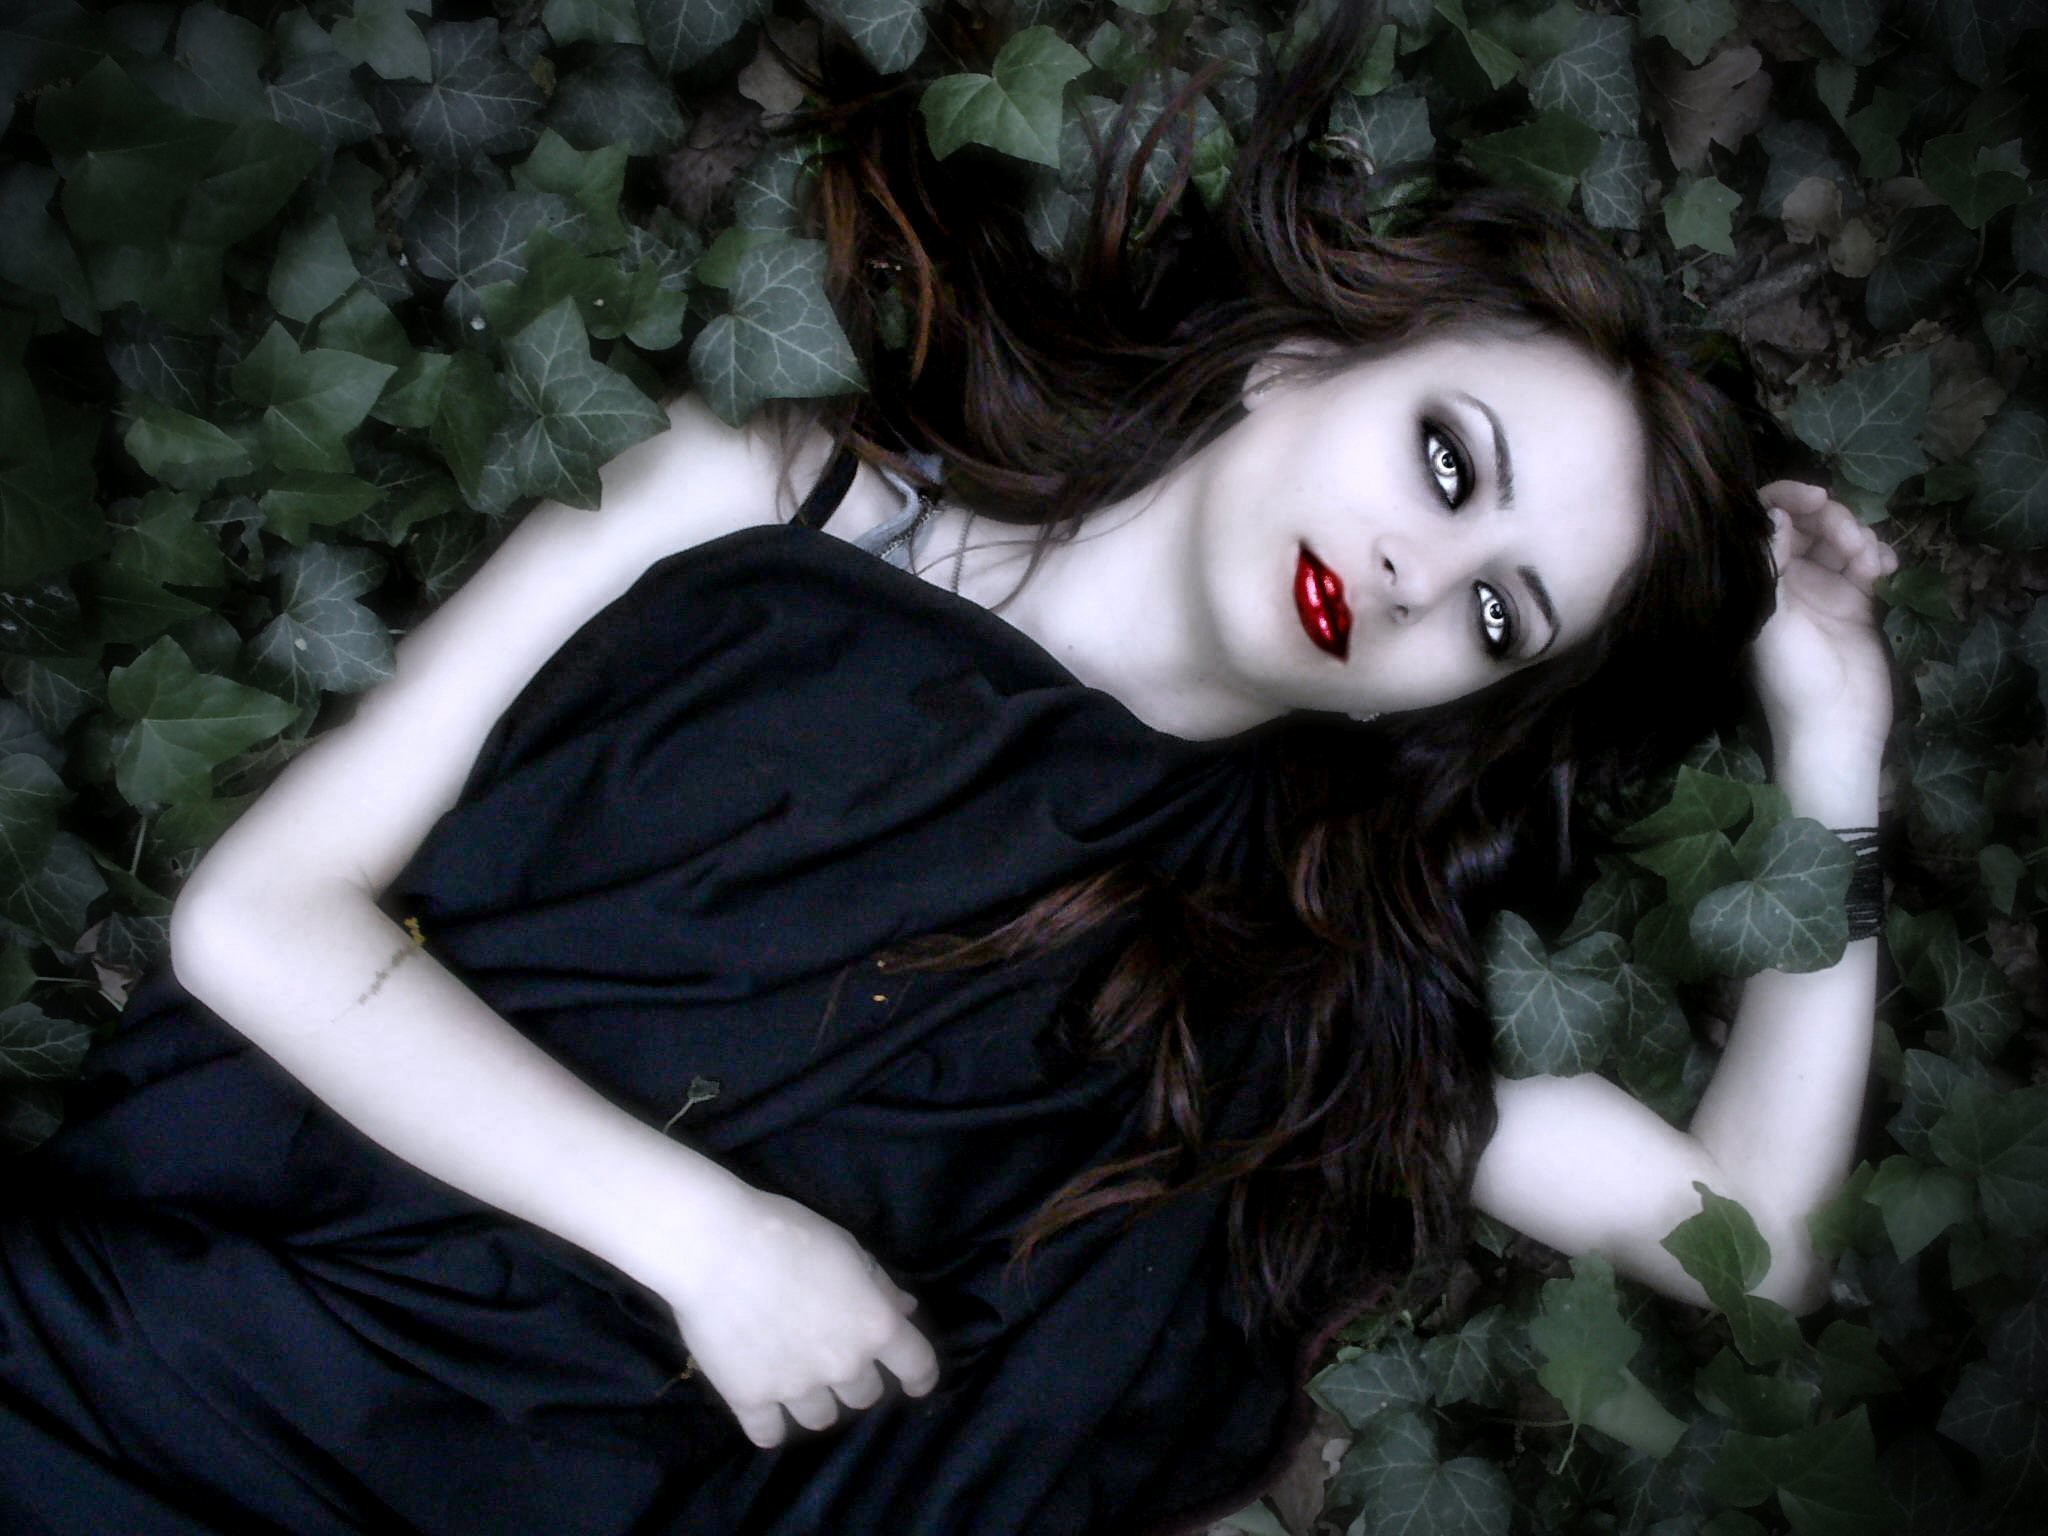 Vampire Girl lying in the leaves wallpaper from Vampire wallpapers